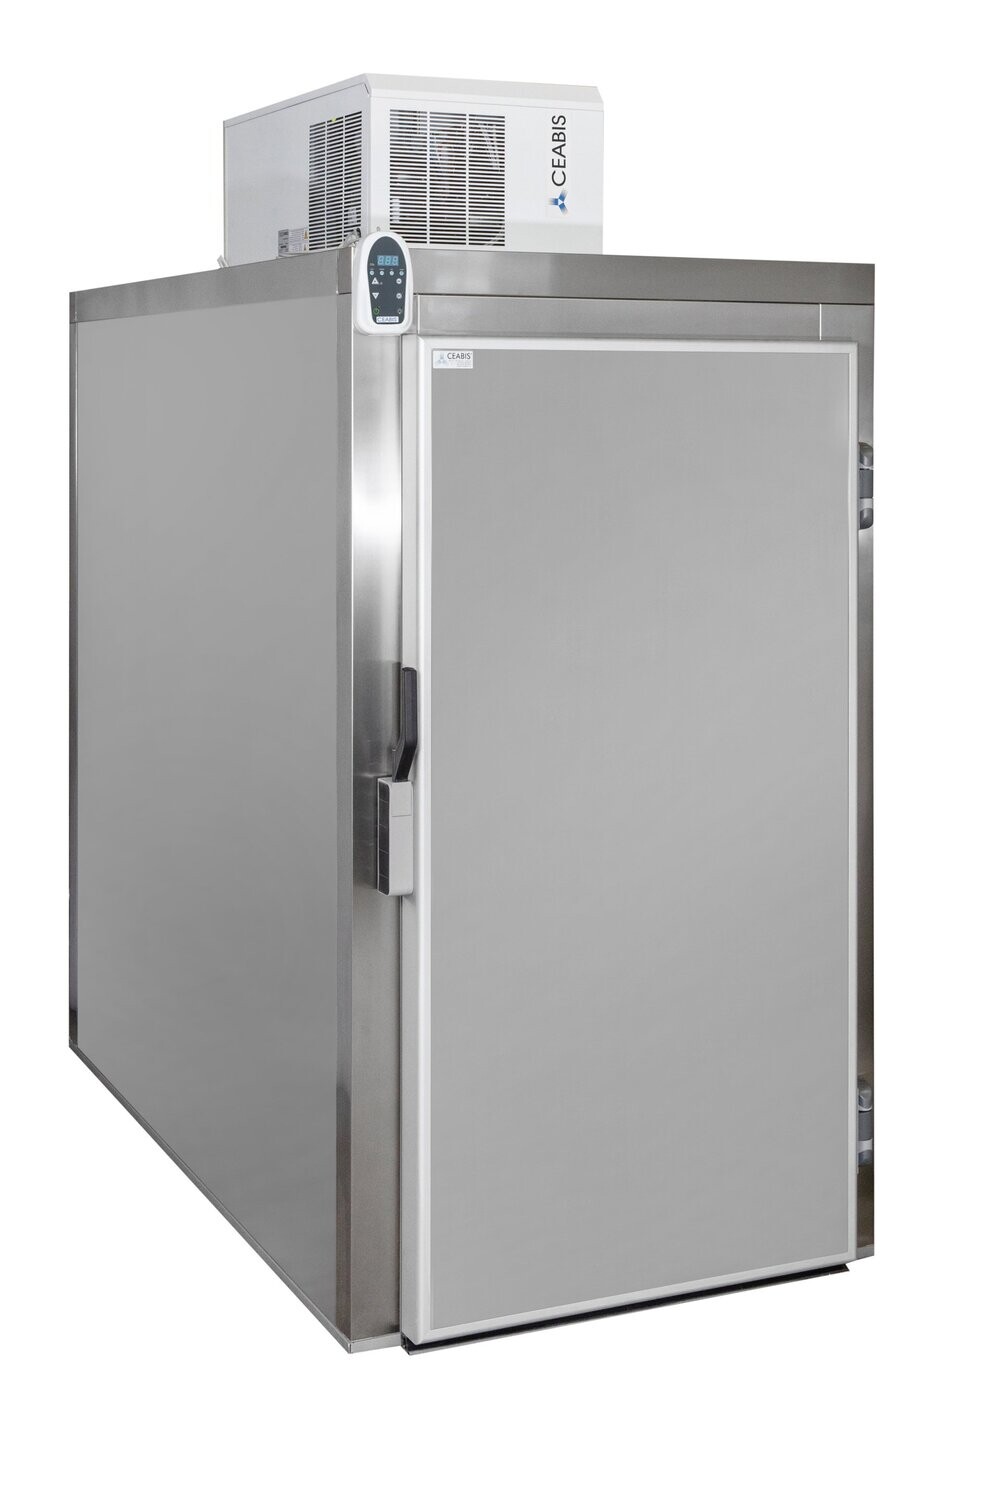 Cella frigorifera due posti con possibilità di inserimento carrelli - 1 porta con apertura frontale